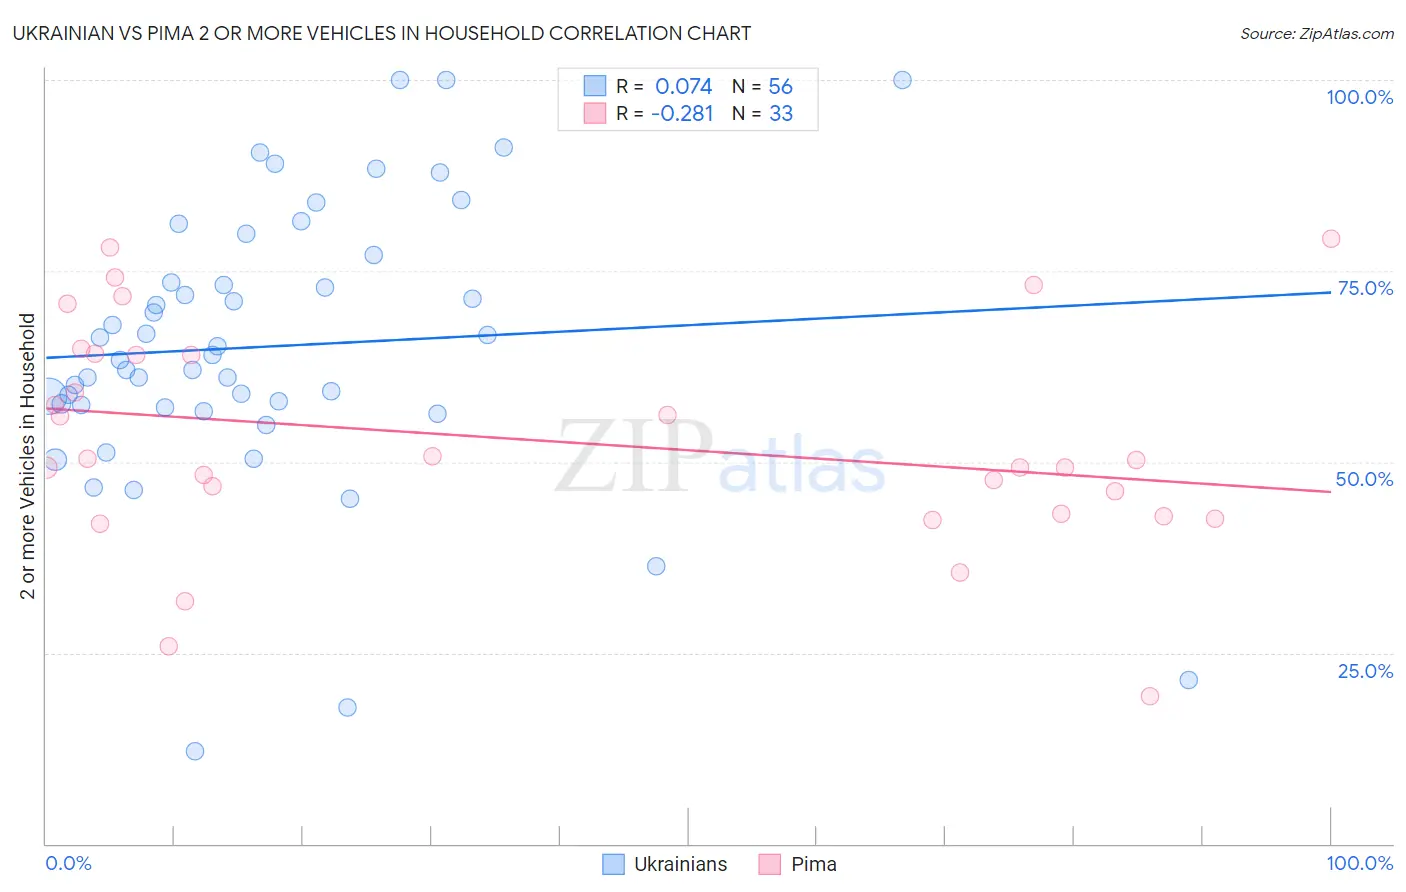 Ukrainian vs Pima 2 or more Vehicles in Household